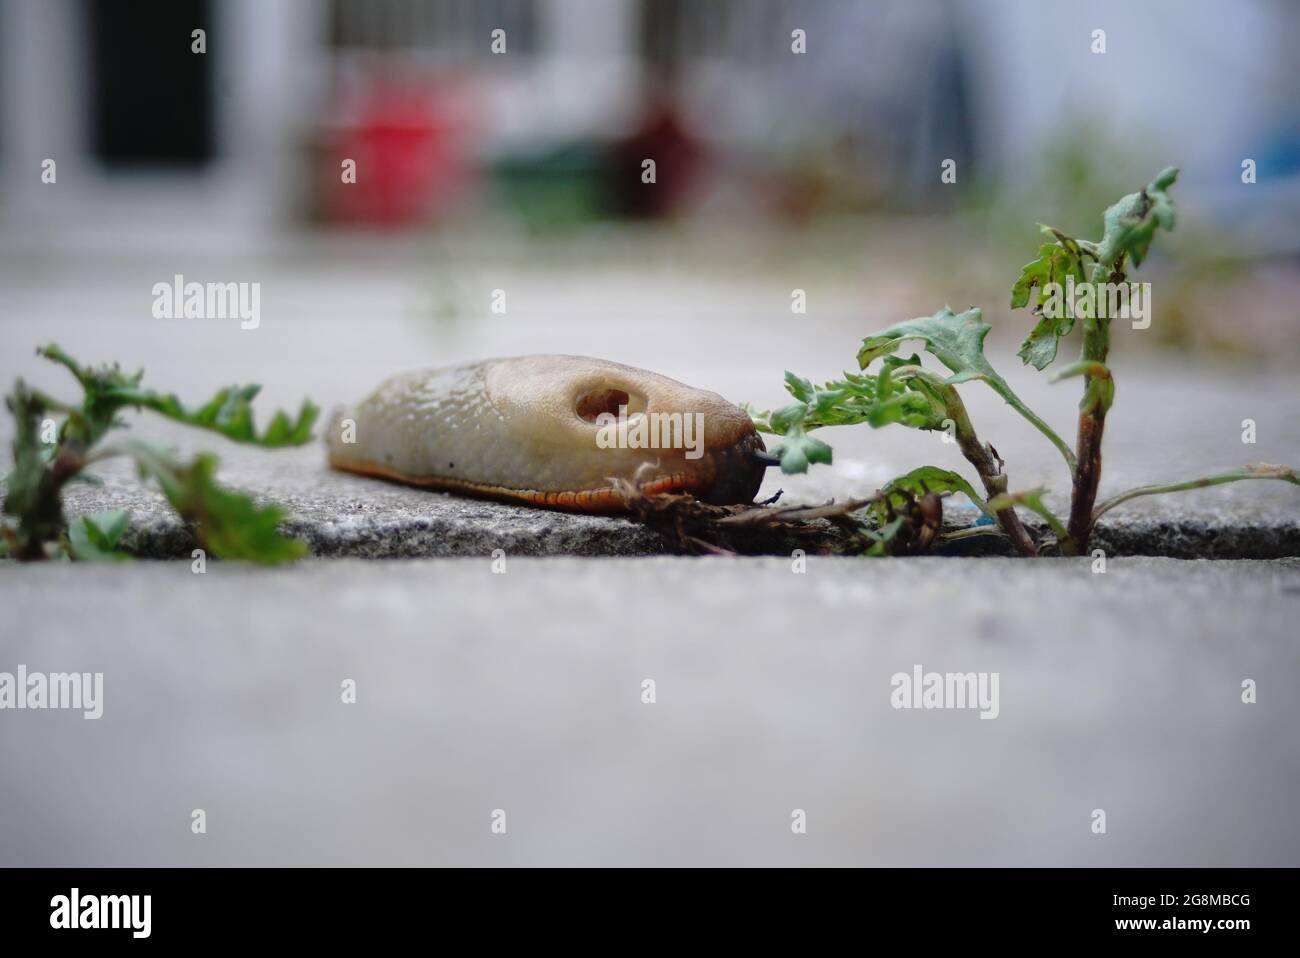 slug si avvicina lentamente ad un giardino erbaccia Foto Stock